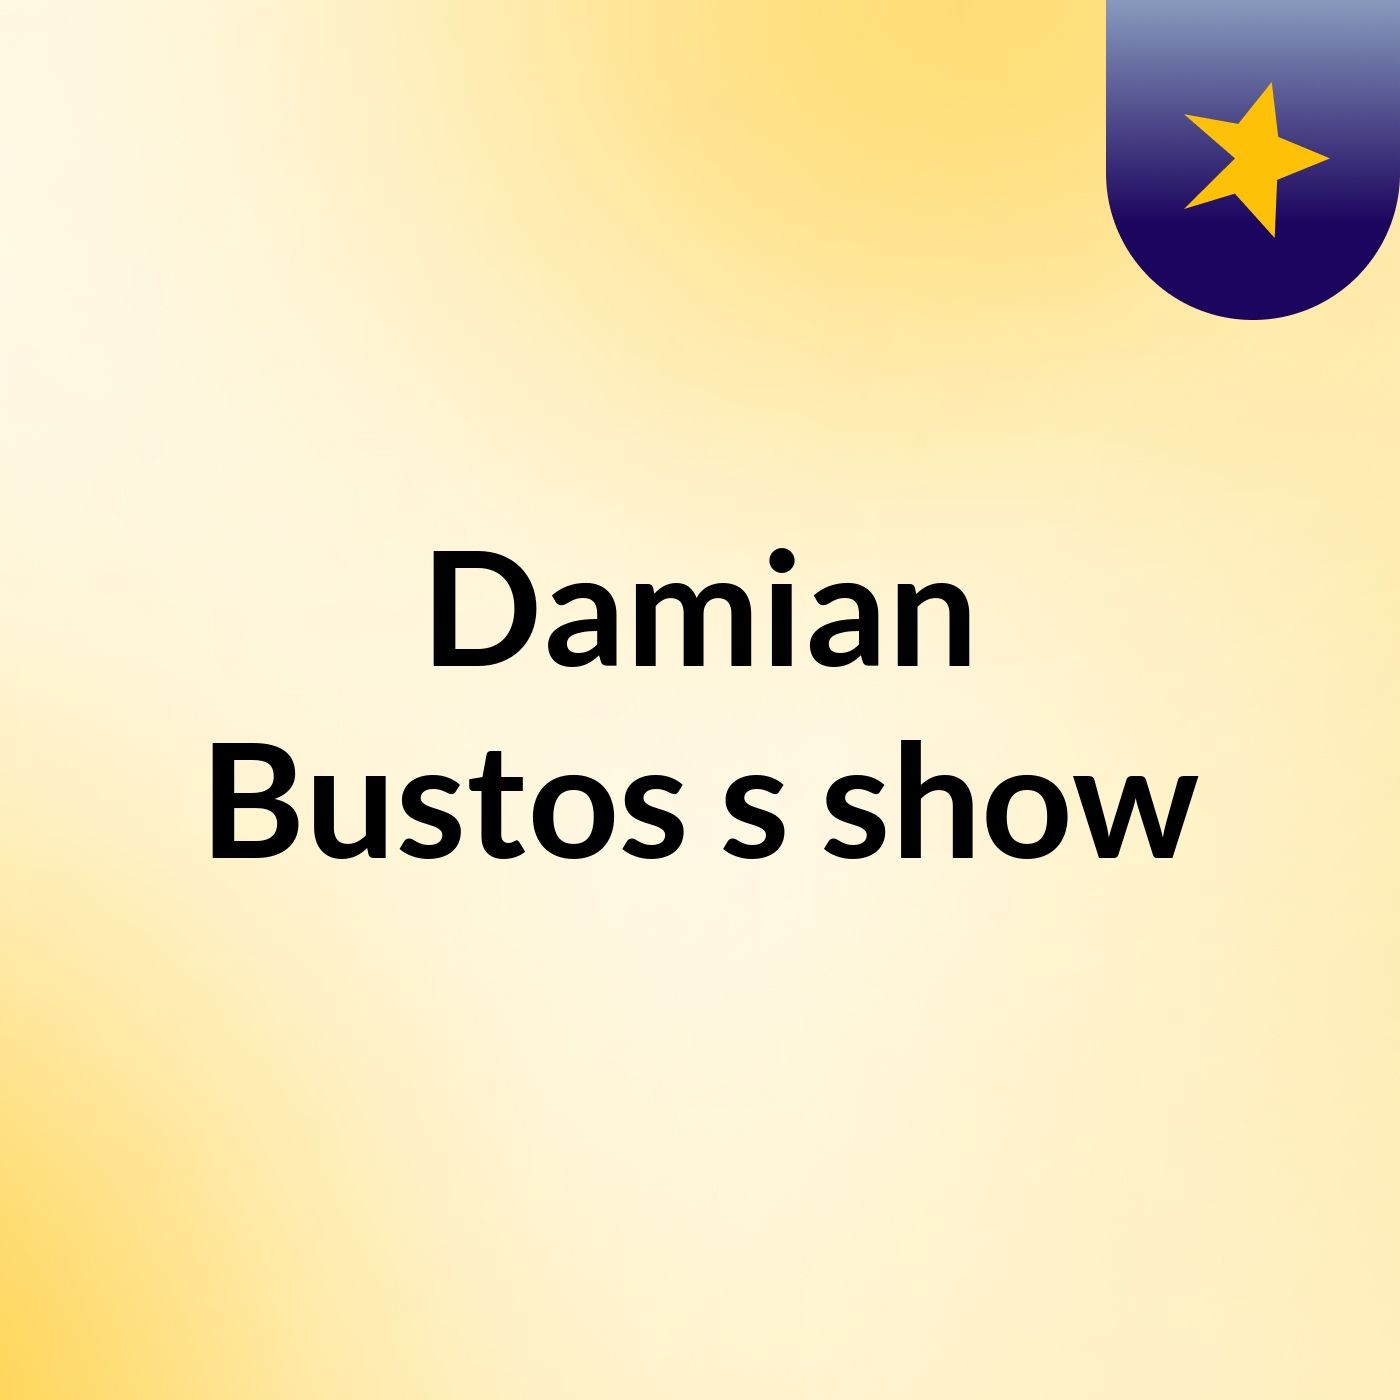 Damian Bustos's show